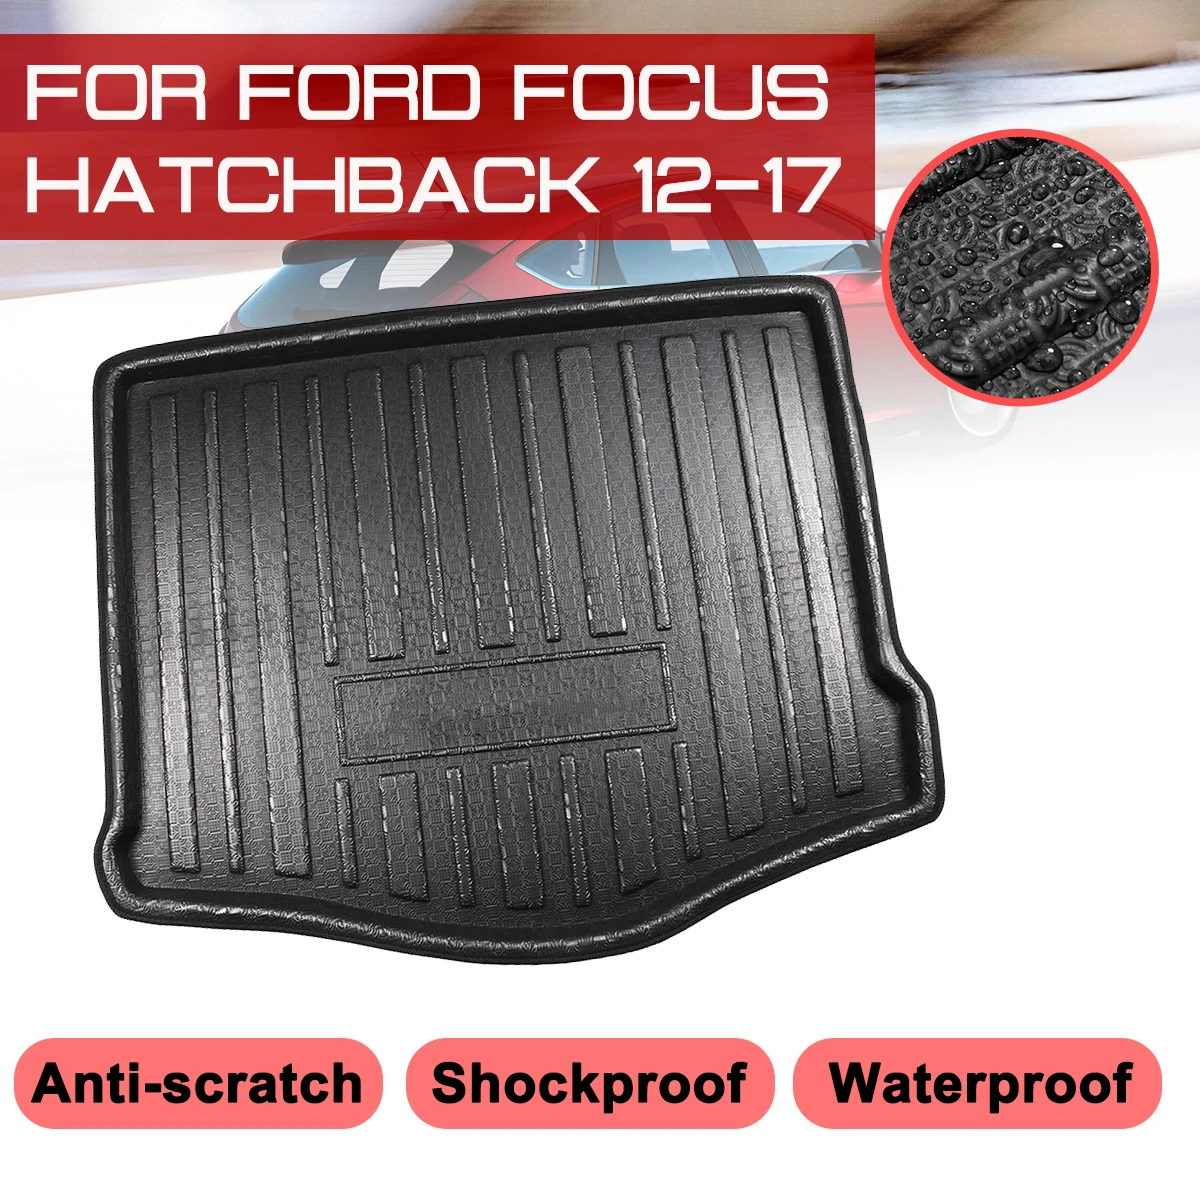 Коврик для хэтчбека Ford Focus 2012 2013 2014 2015-2017, автомобильный напольный коврик, задний багажник, грязевая крышка